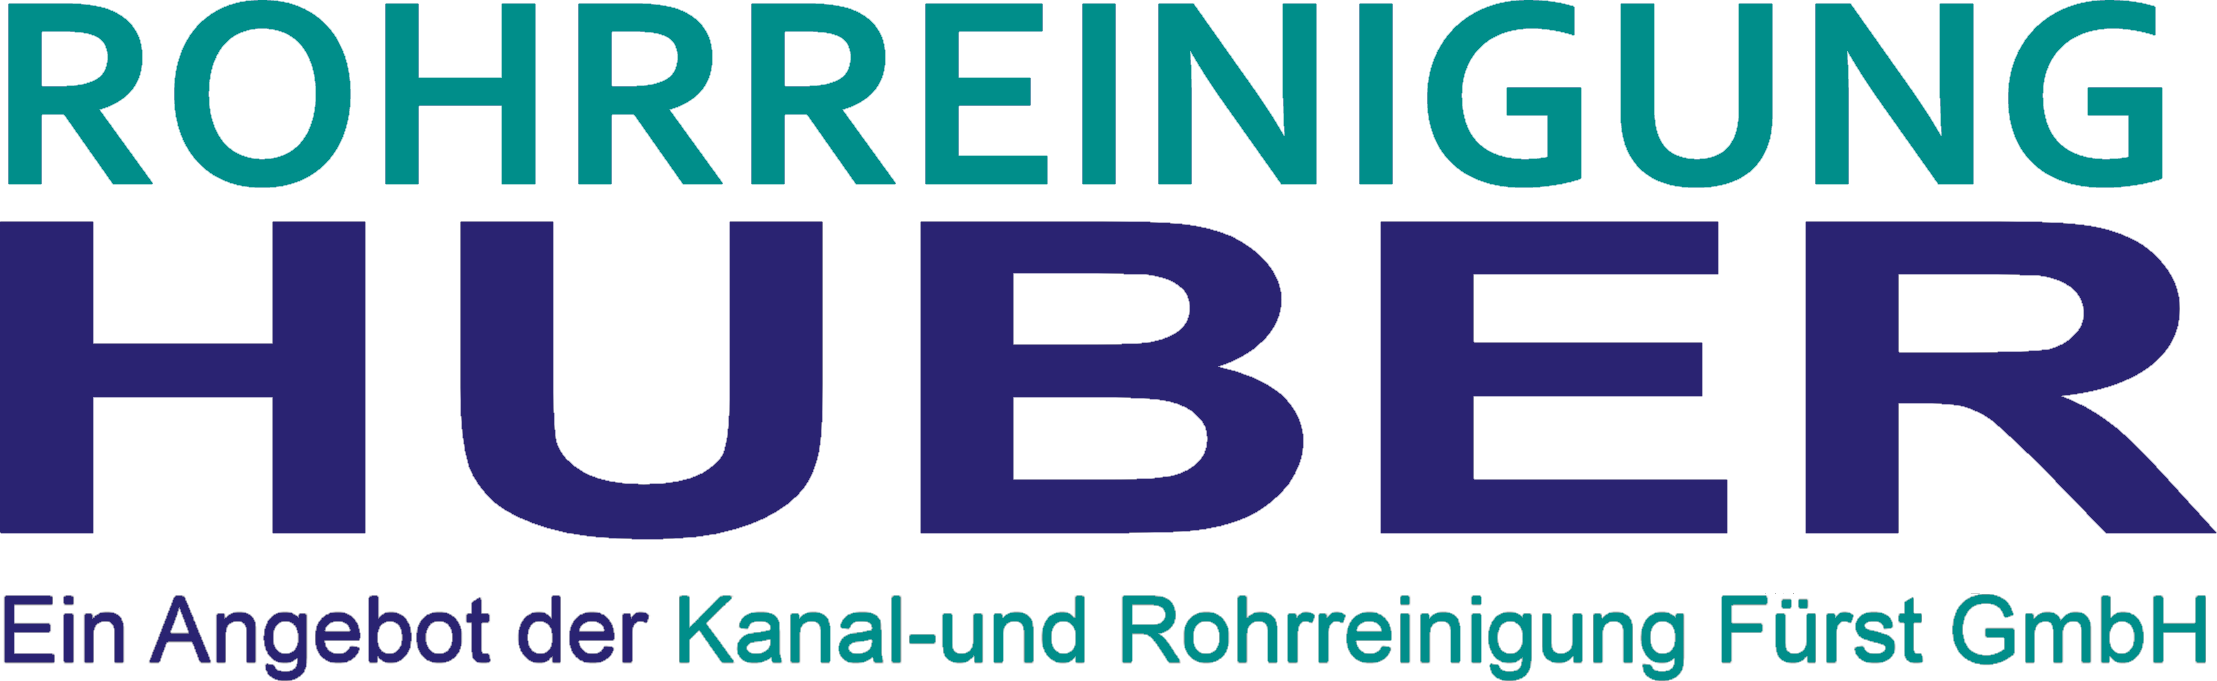 Rohrreinigung Huber - Rohrreinigung für Heltersberg